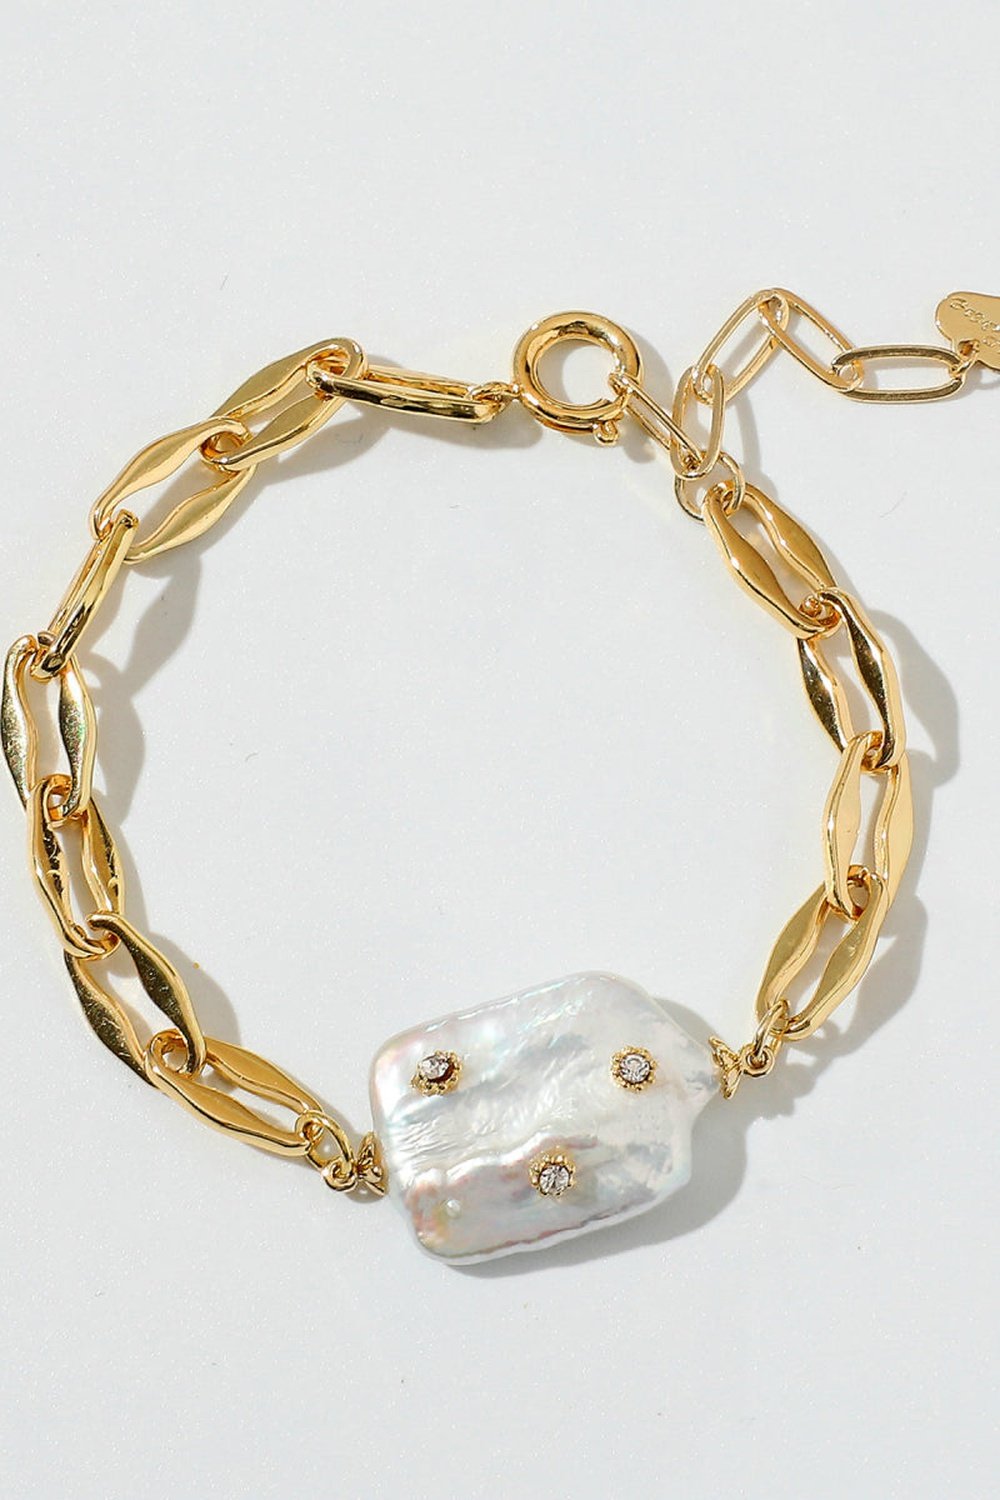 Gold Plated Bracelet - Bracelets - FITGGINS